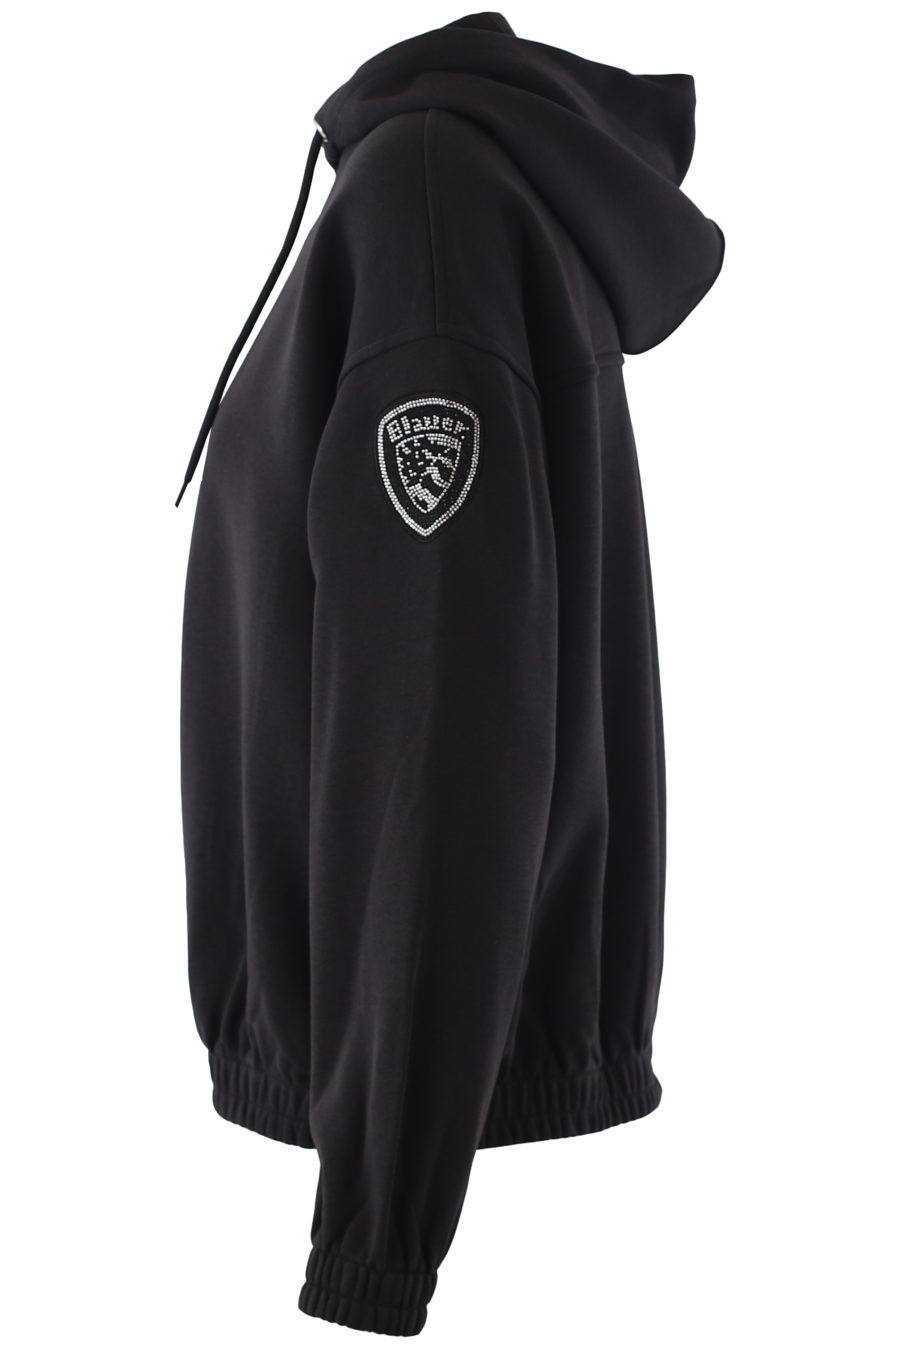 Schwarzes Sweatshirt mit Kapuze und Kristallen als Logo - IMG 6784